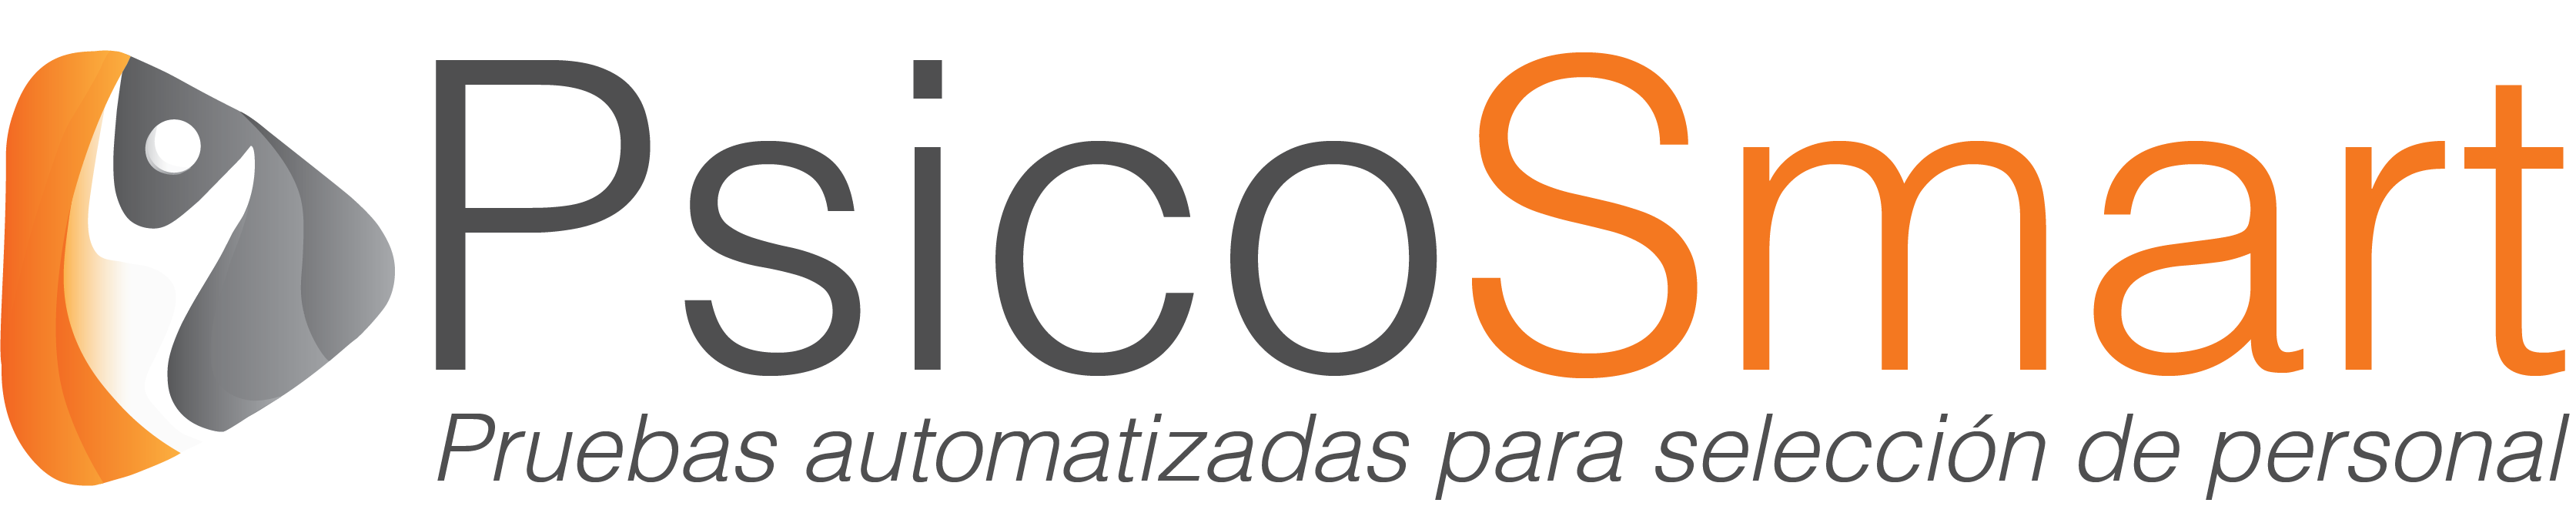 psicosmart-logo